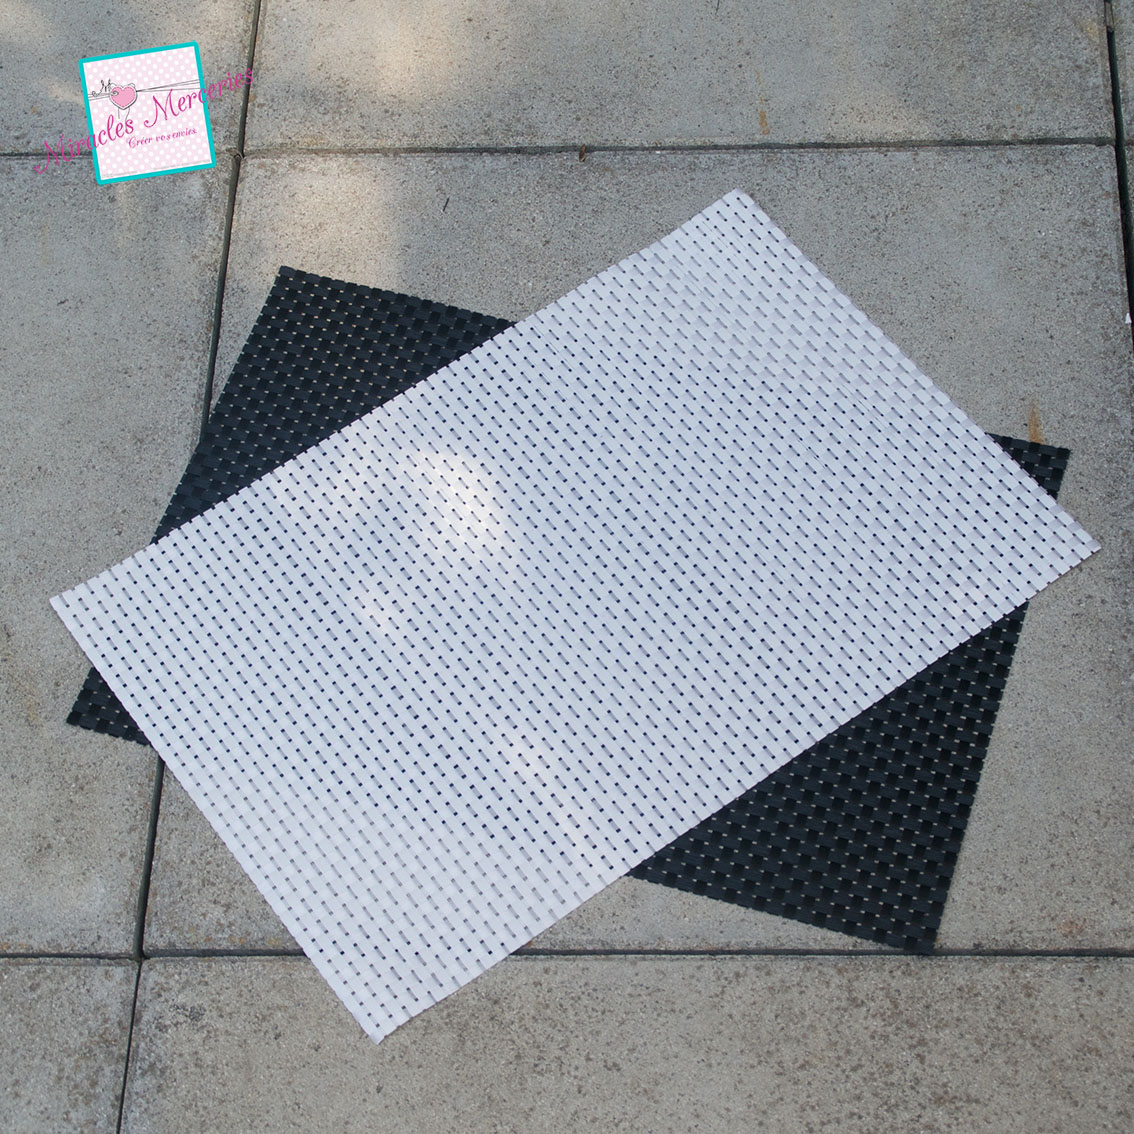 1 tatamis anti-glissement en vinyle 45x30cm ,blanc